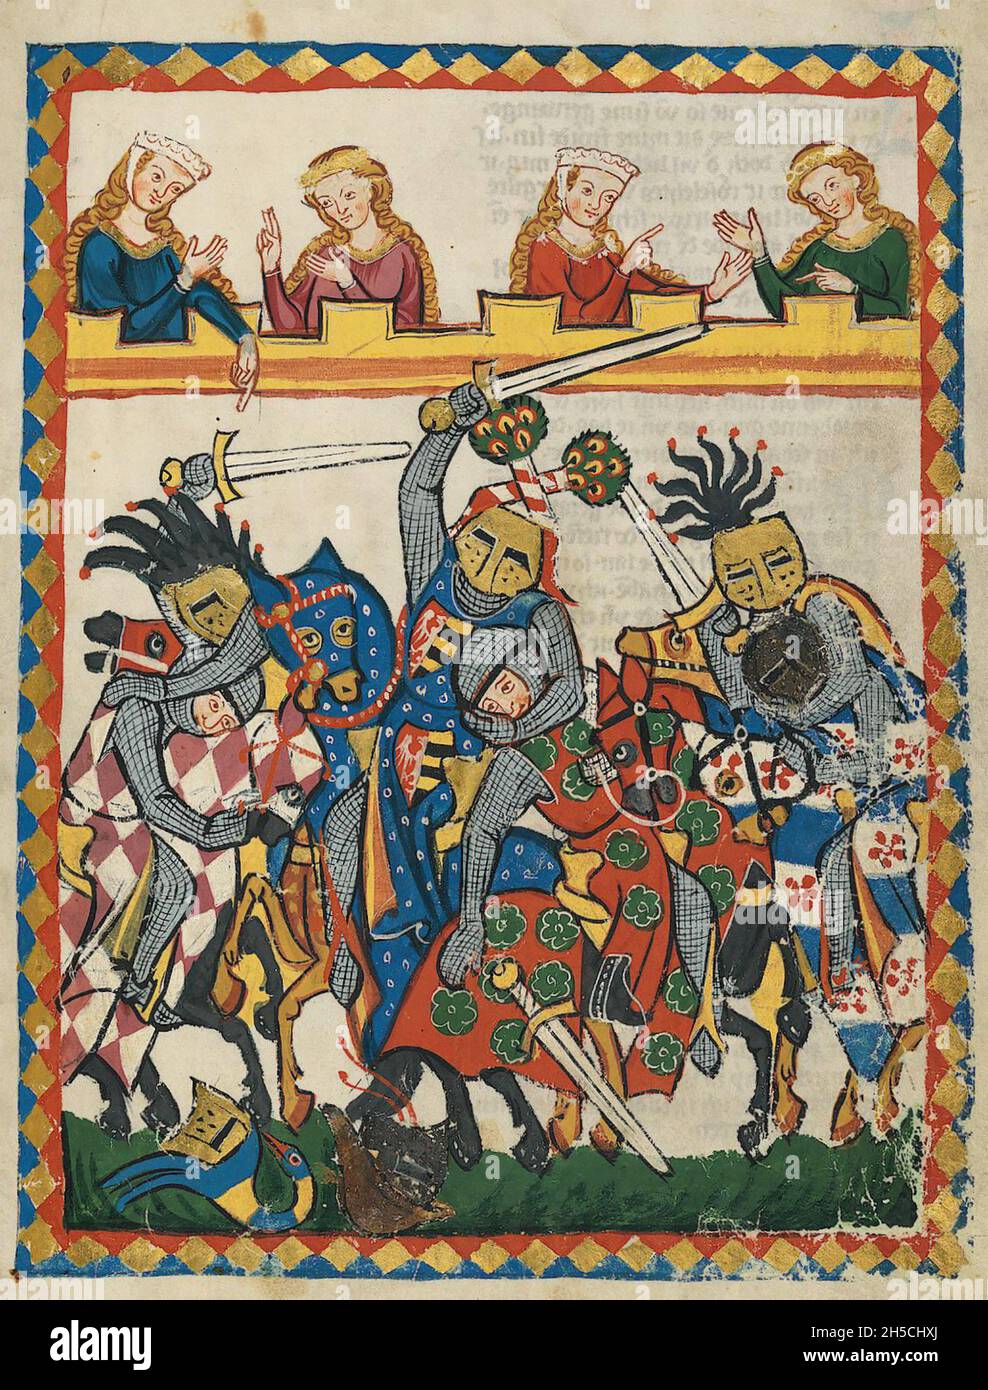 CODEX MANESSE un manoscritto tedesco dell'inizio alla metà del XIV secolo contenente canzoni e raffiguranti la vita medievale. Le Signore di corte guardano una battaglia simulata. Foto Stock